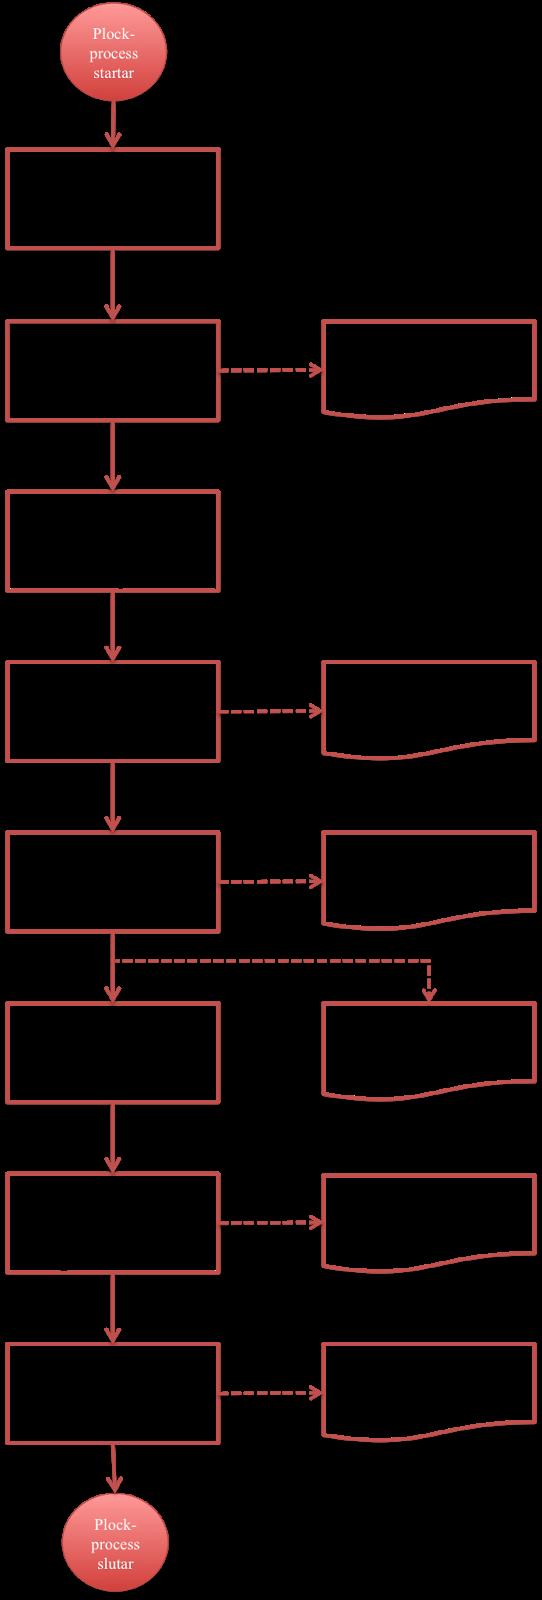 3.2.1 Åbros plockprocess Plockprocessen på Åbros plocklager presenteras i figur 3.5. Plockprocessen startar när en order frisläpps i datasystemet Epix (aktivitet 1 i figur 3.5).